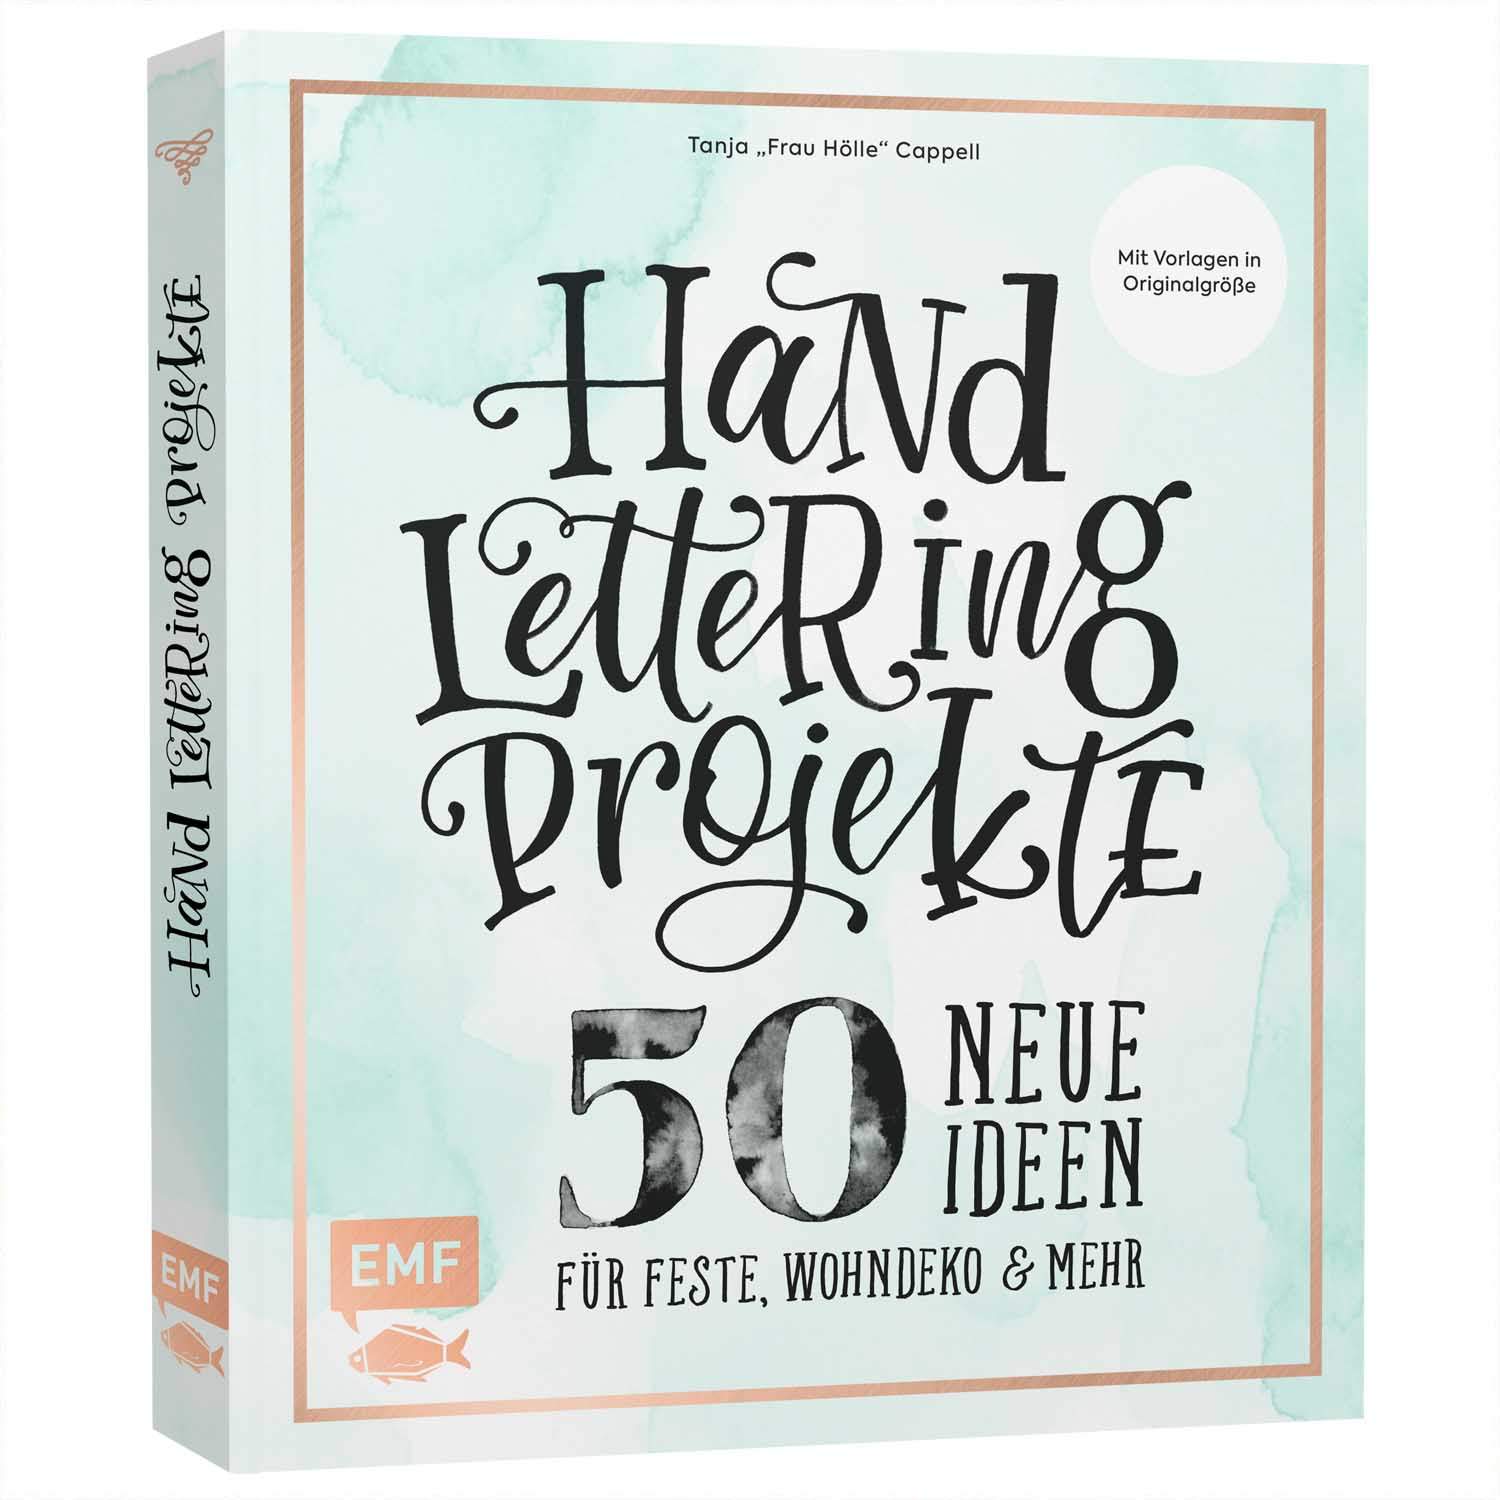 Wohndeko Online Shop Neu Emf Handlettering Projekte 50 Neue Ideen Für Feste Wohndeko Und Mehr